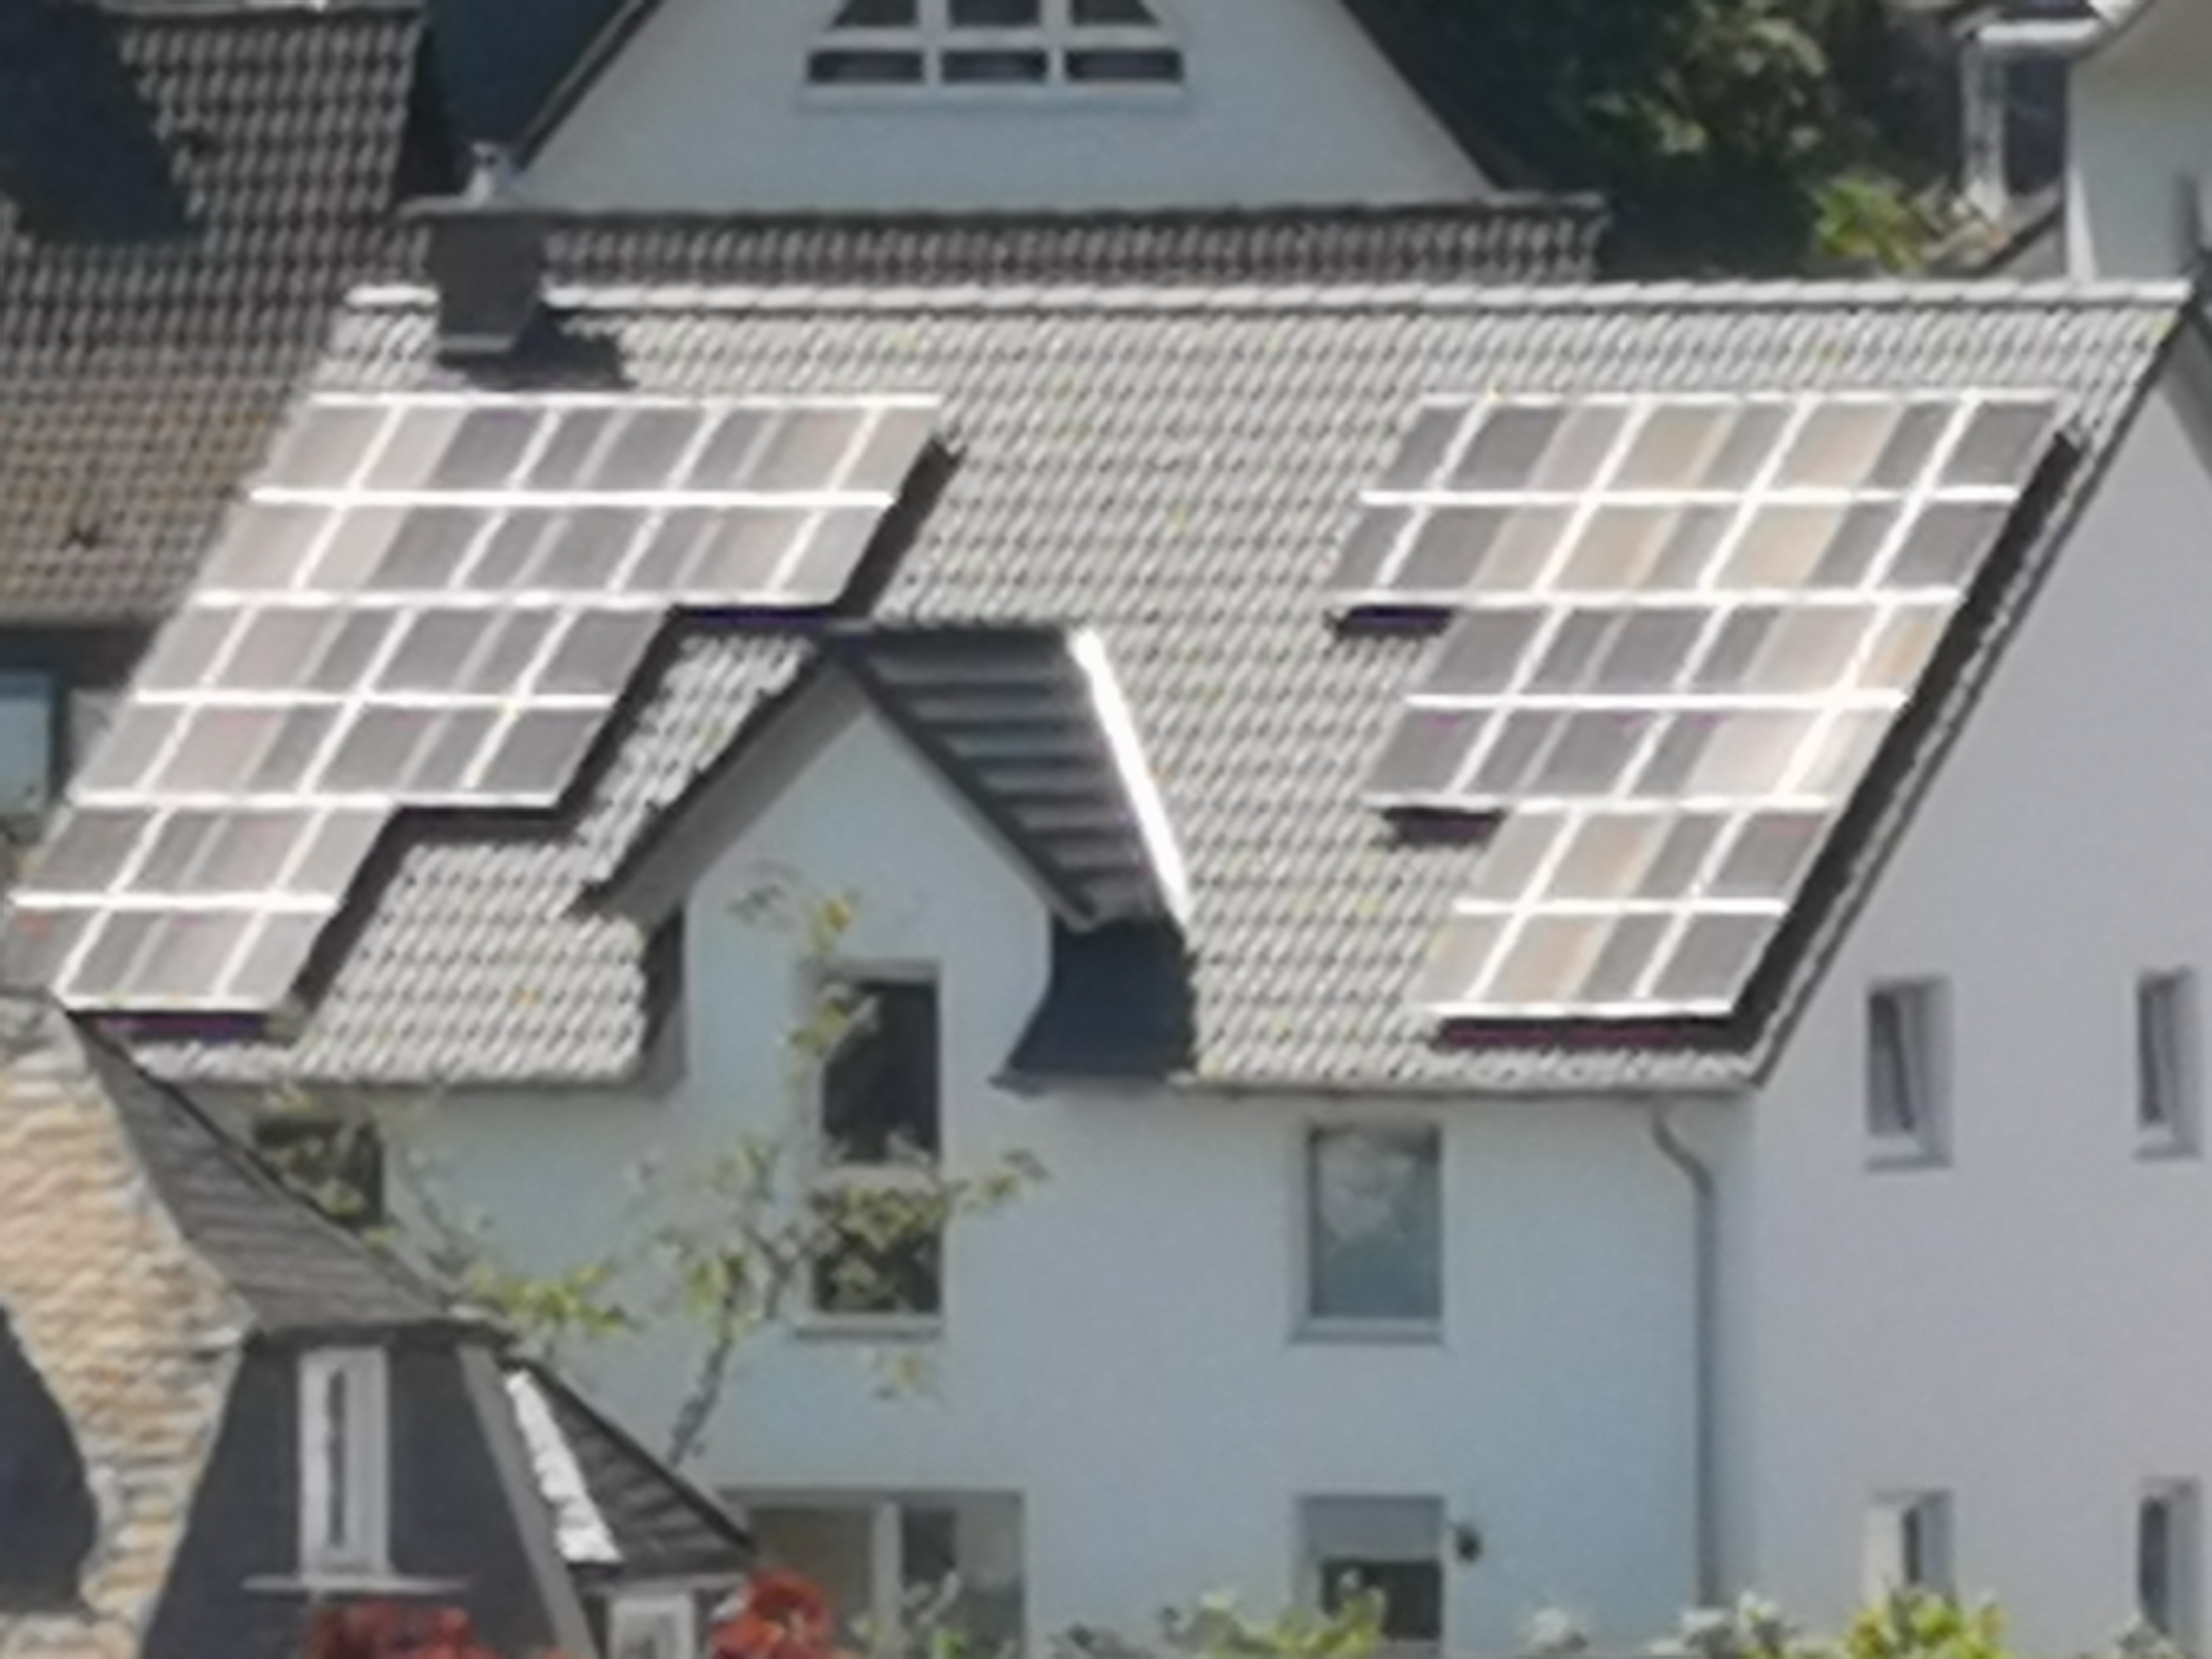  Vortrag zum Thema „Nutzung von Solarstrom“, 31.08.2022, 18:00 Uhr, Finnentrop